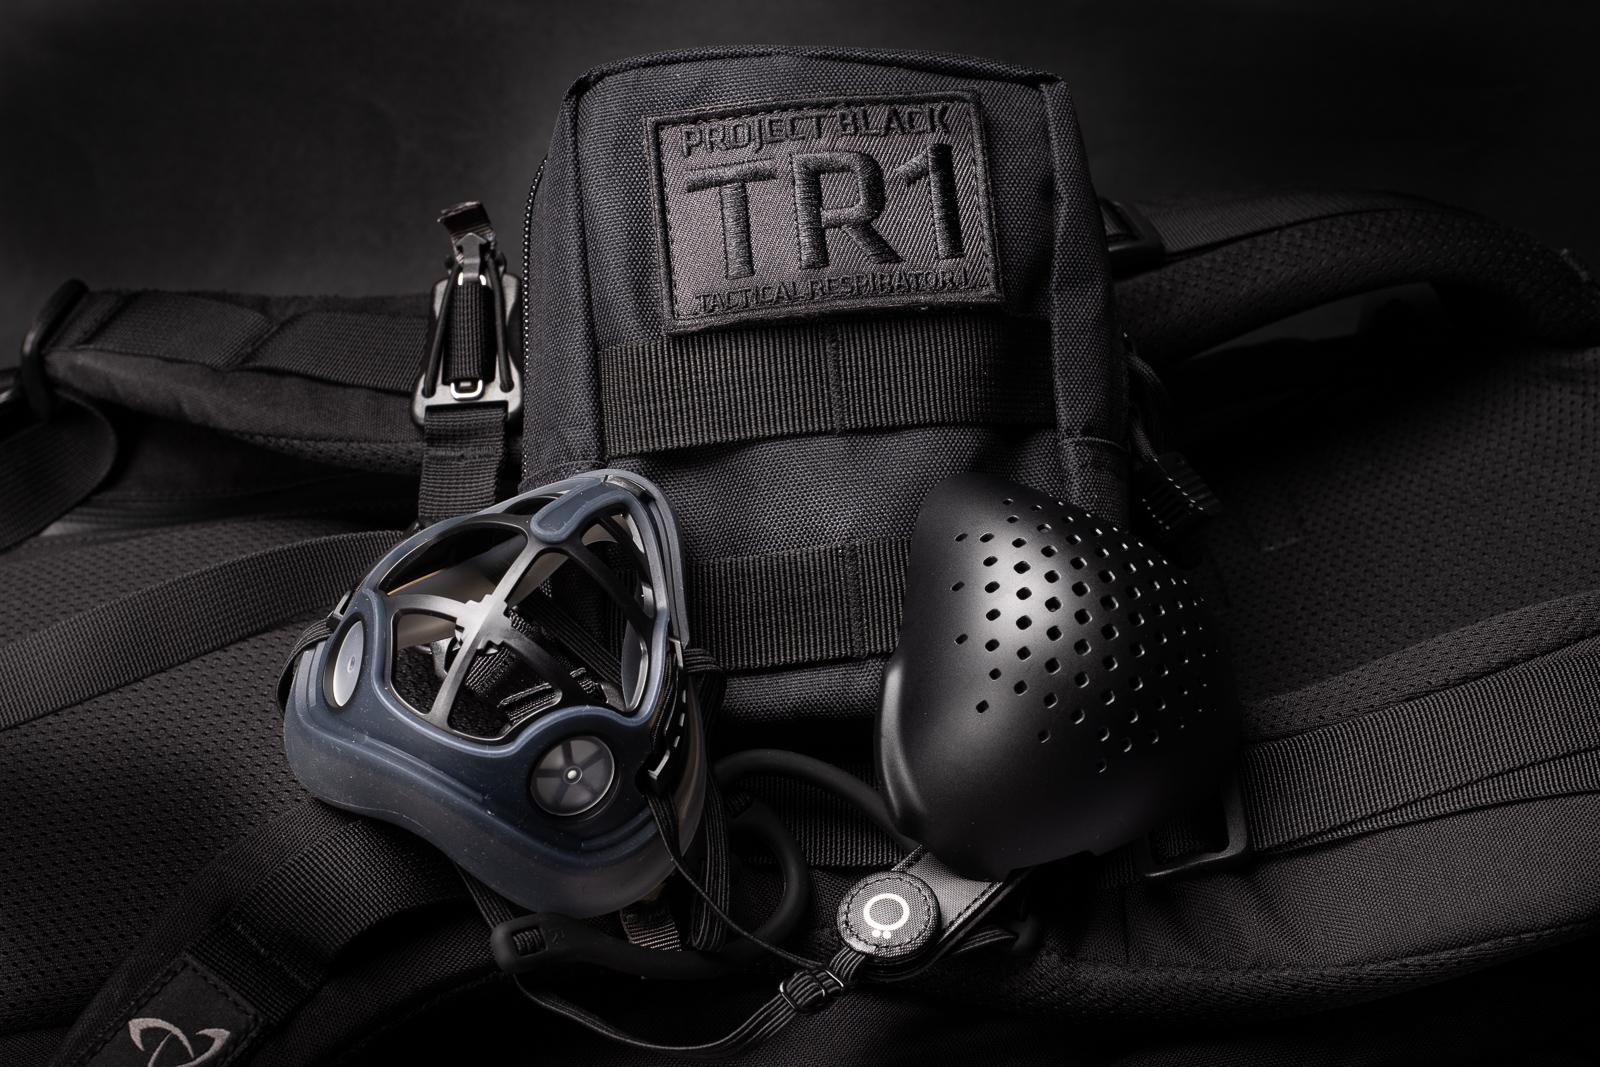 O2 Tactical TR1 口罩